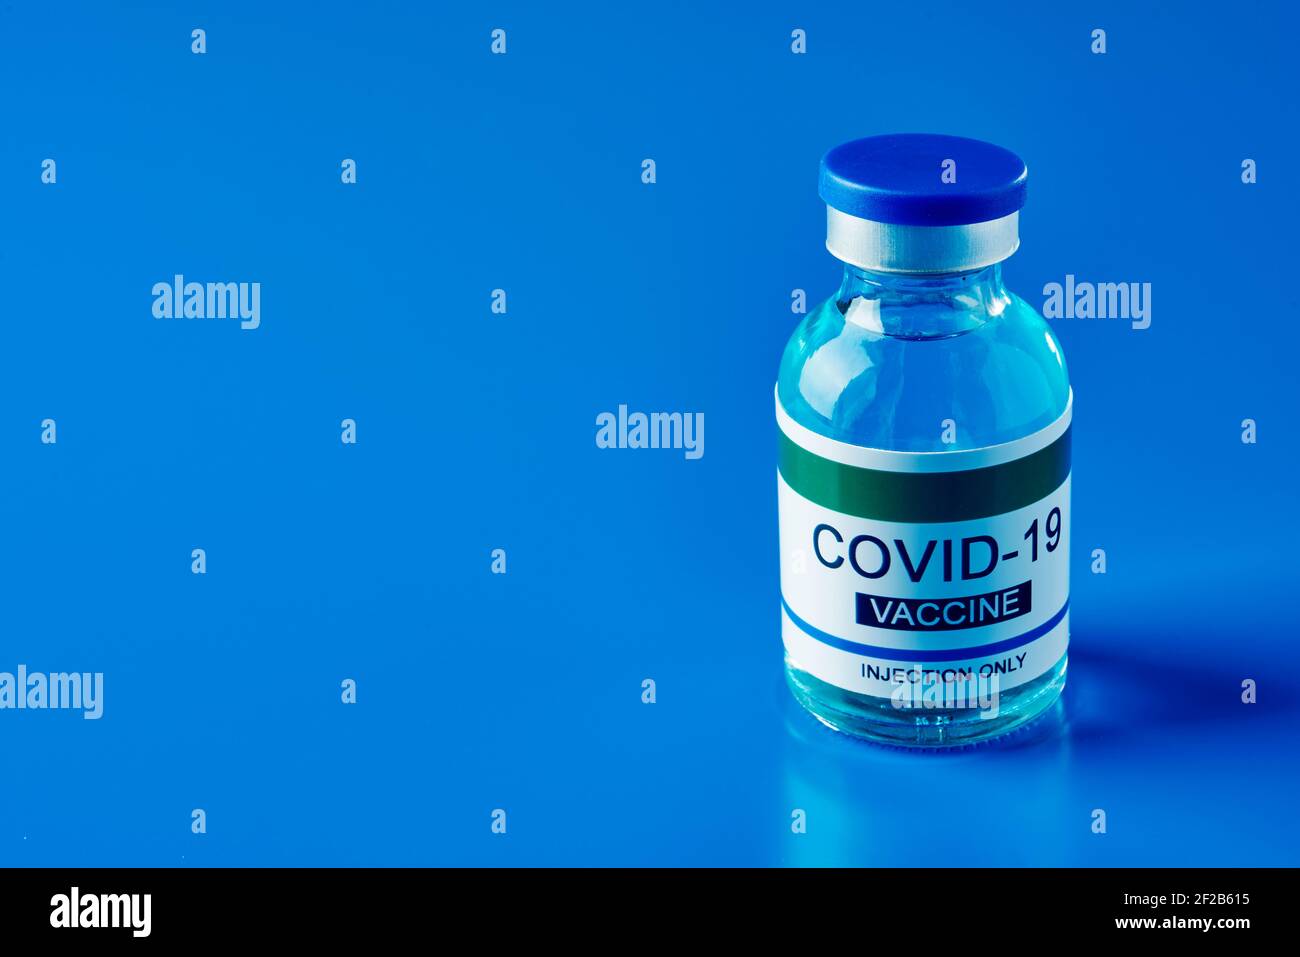 una fiala simulata di vaccino covid-19 su sfondo blu, con un po' di spazio vuoto sulla sinistra Foto Stock